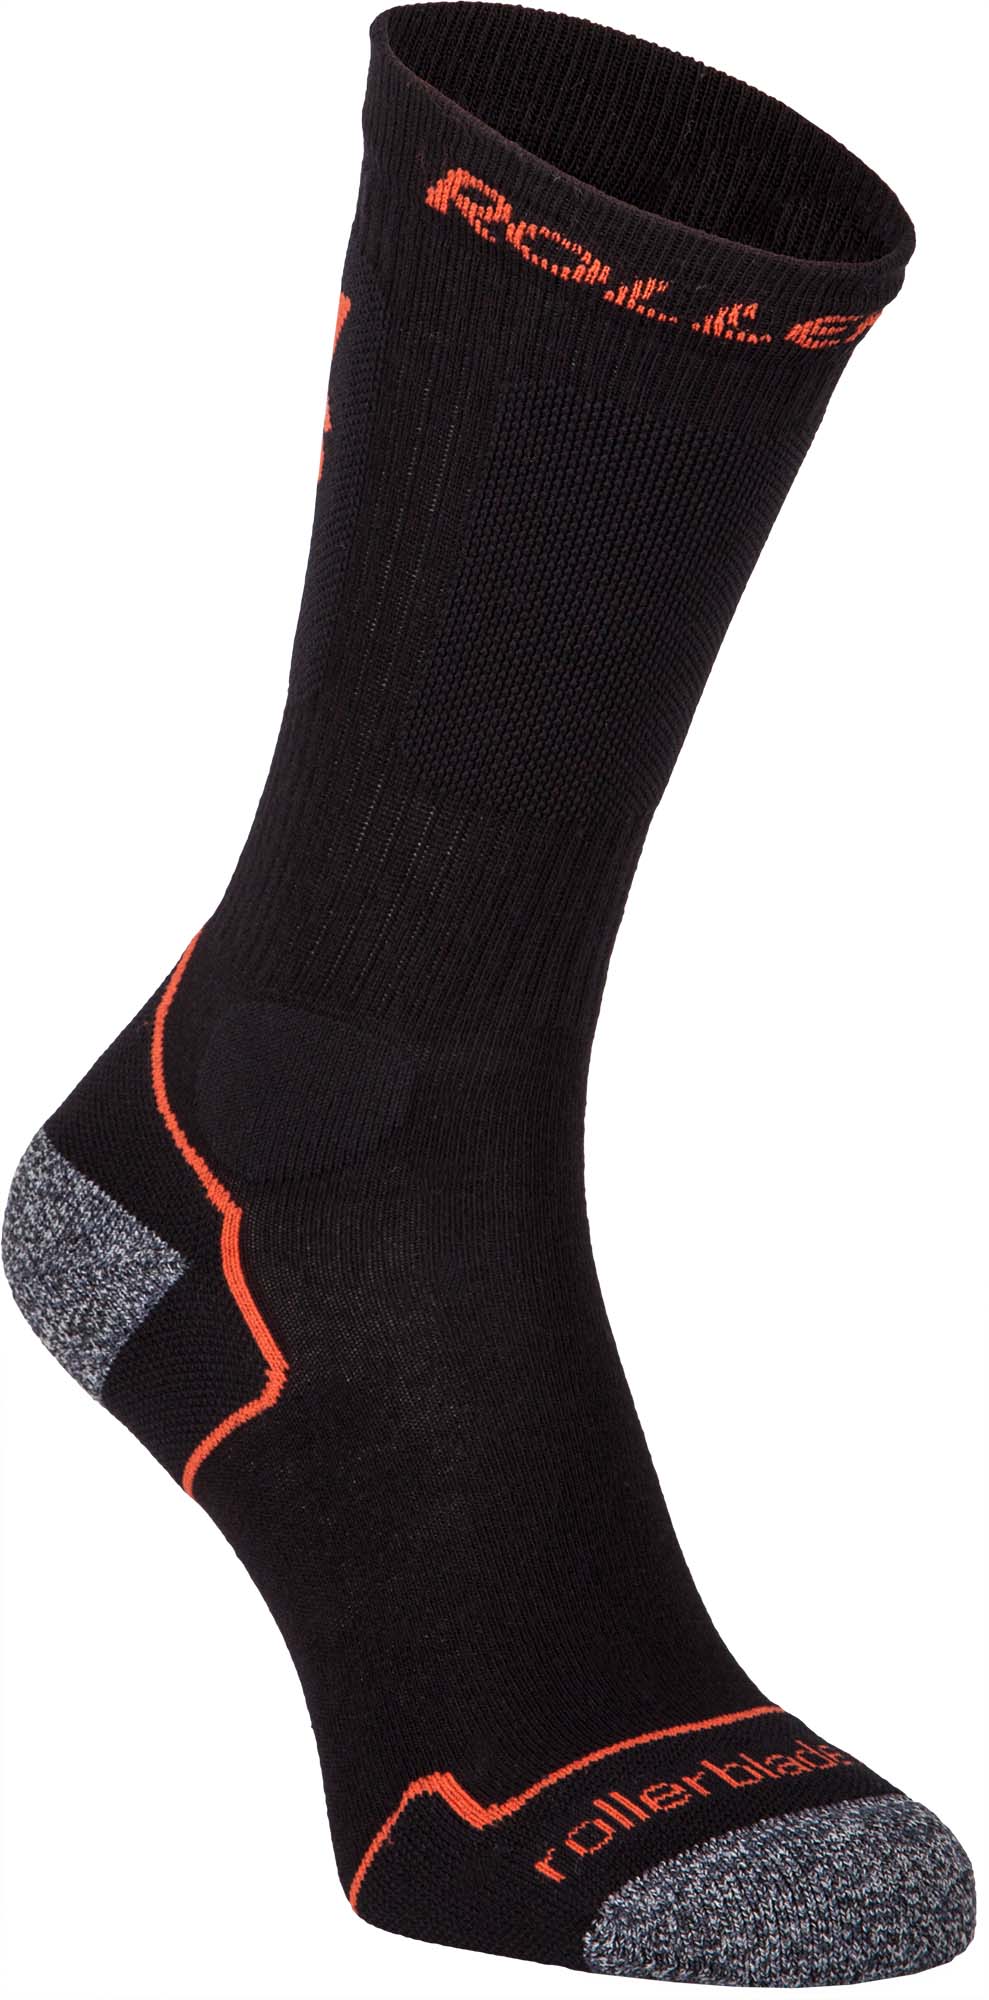 Men’s knee socks